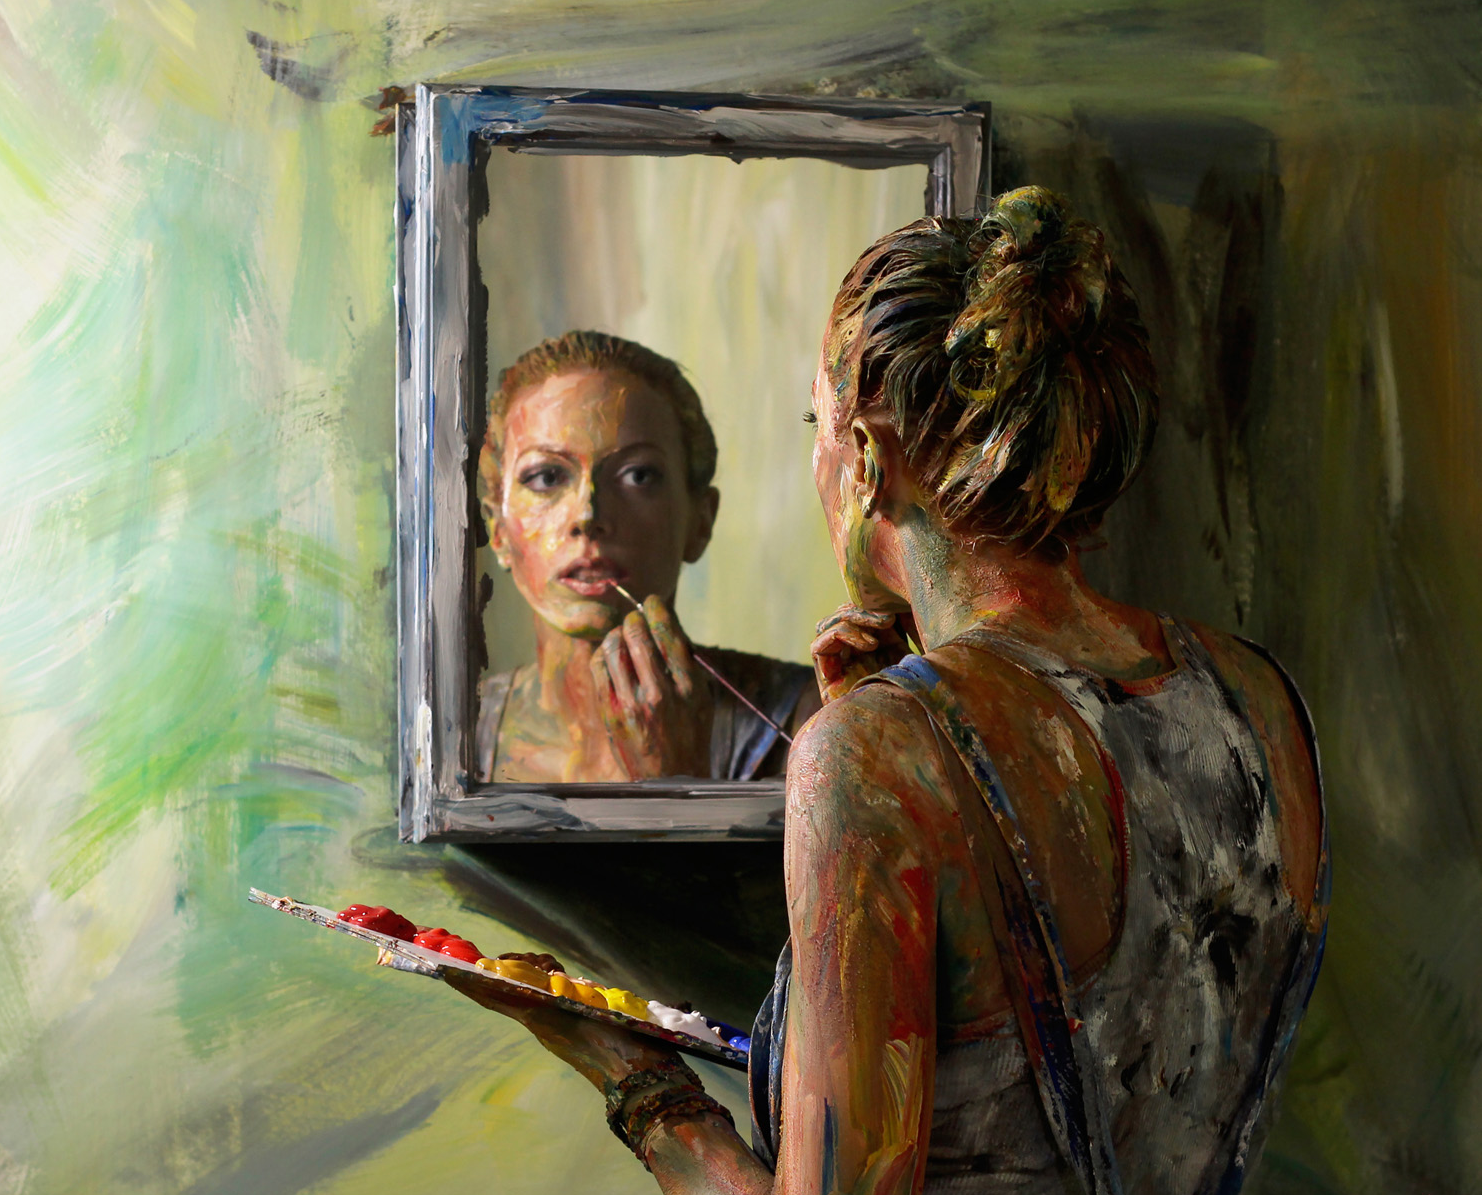 mirror paintings